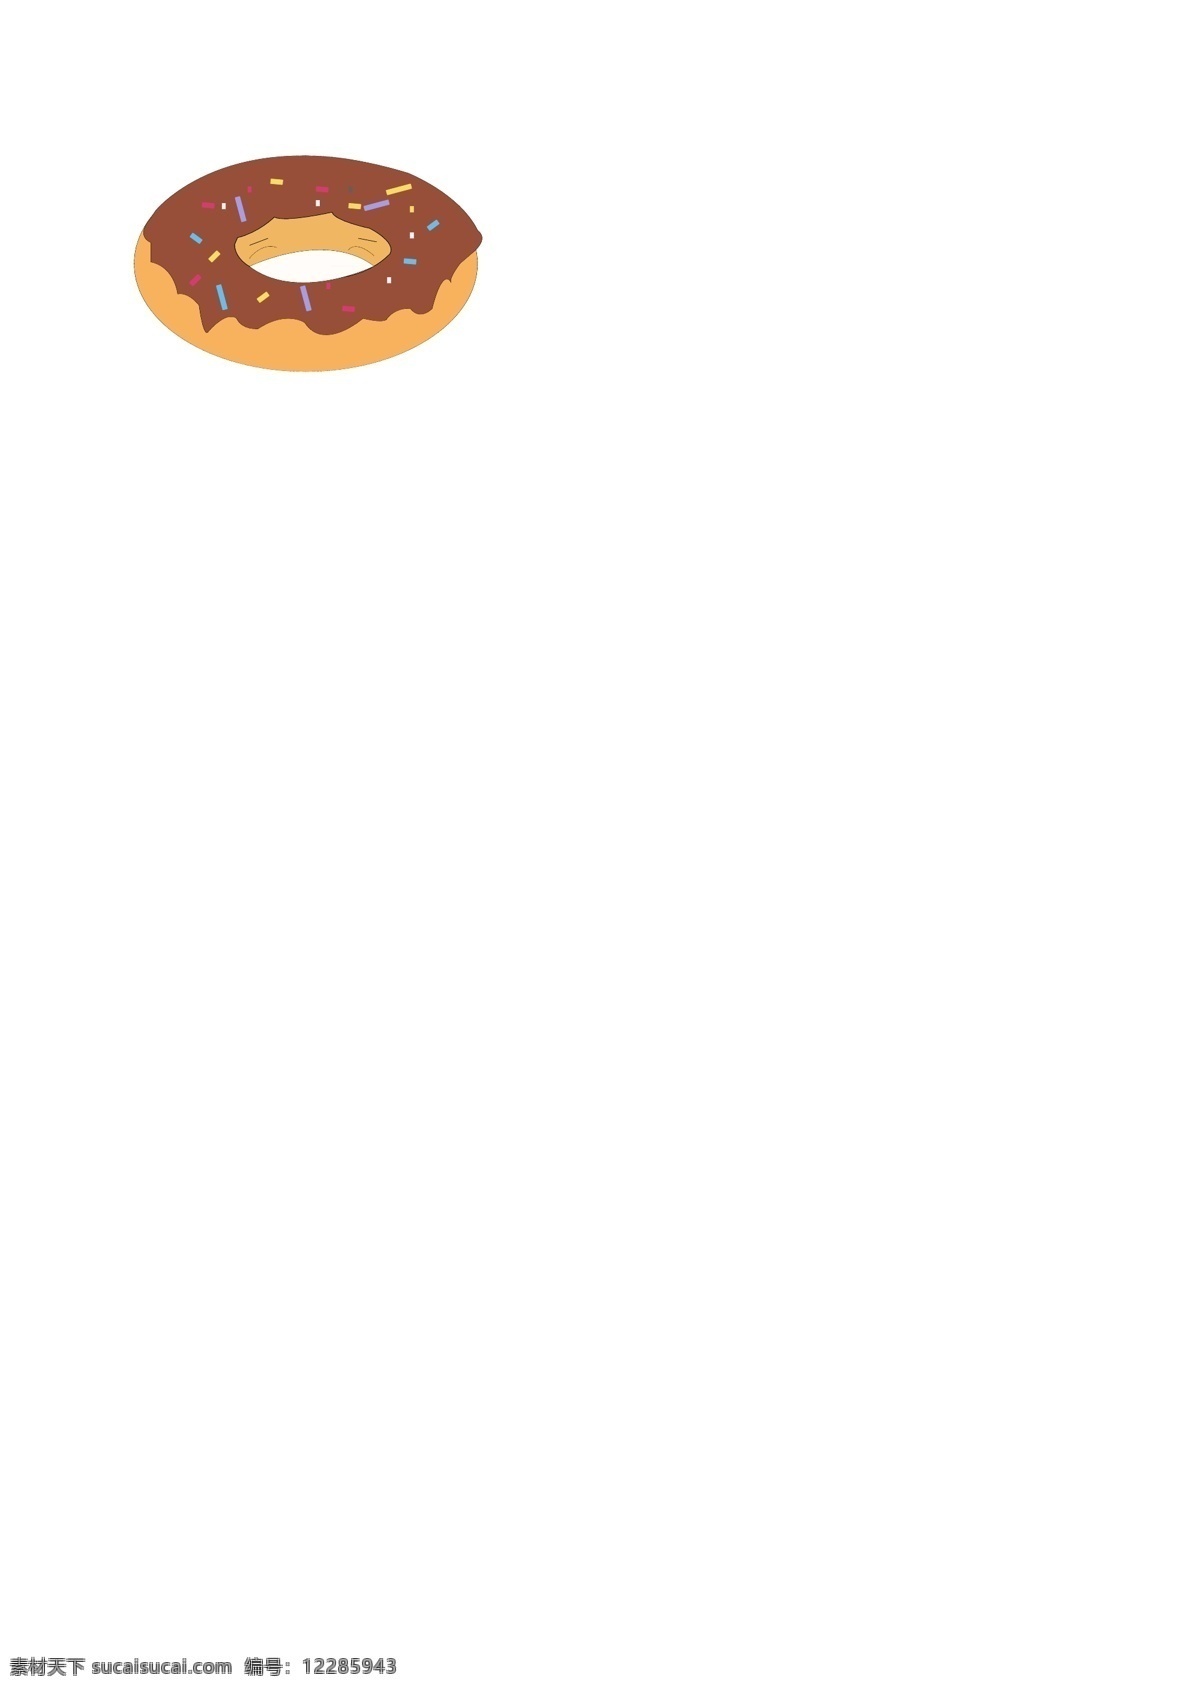 甜甜圈 矢量图 食物 甜品 手绘